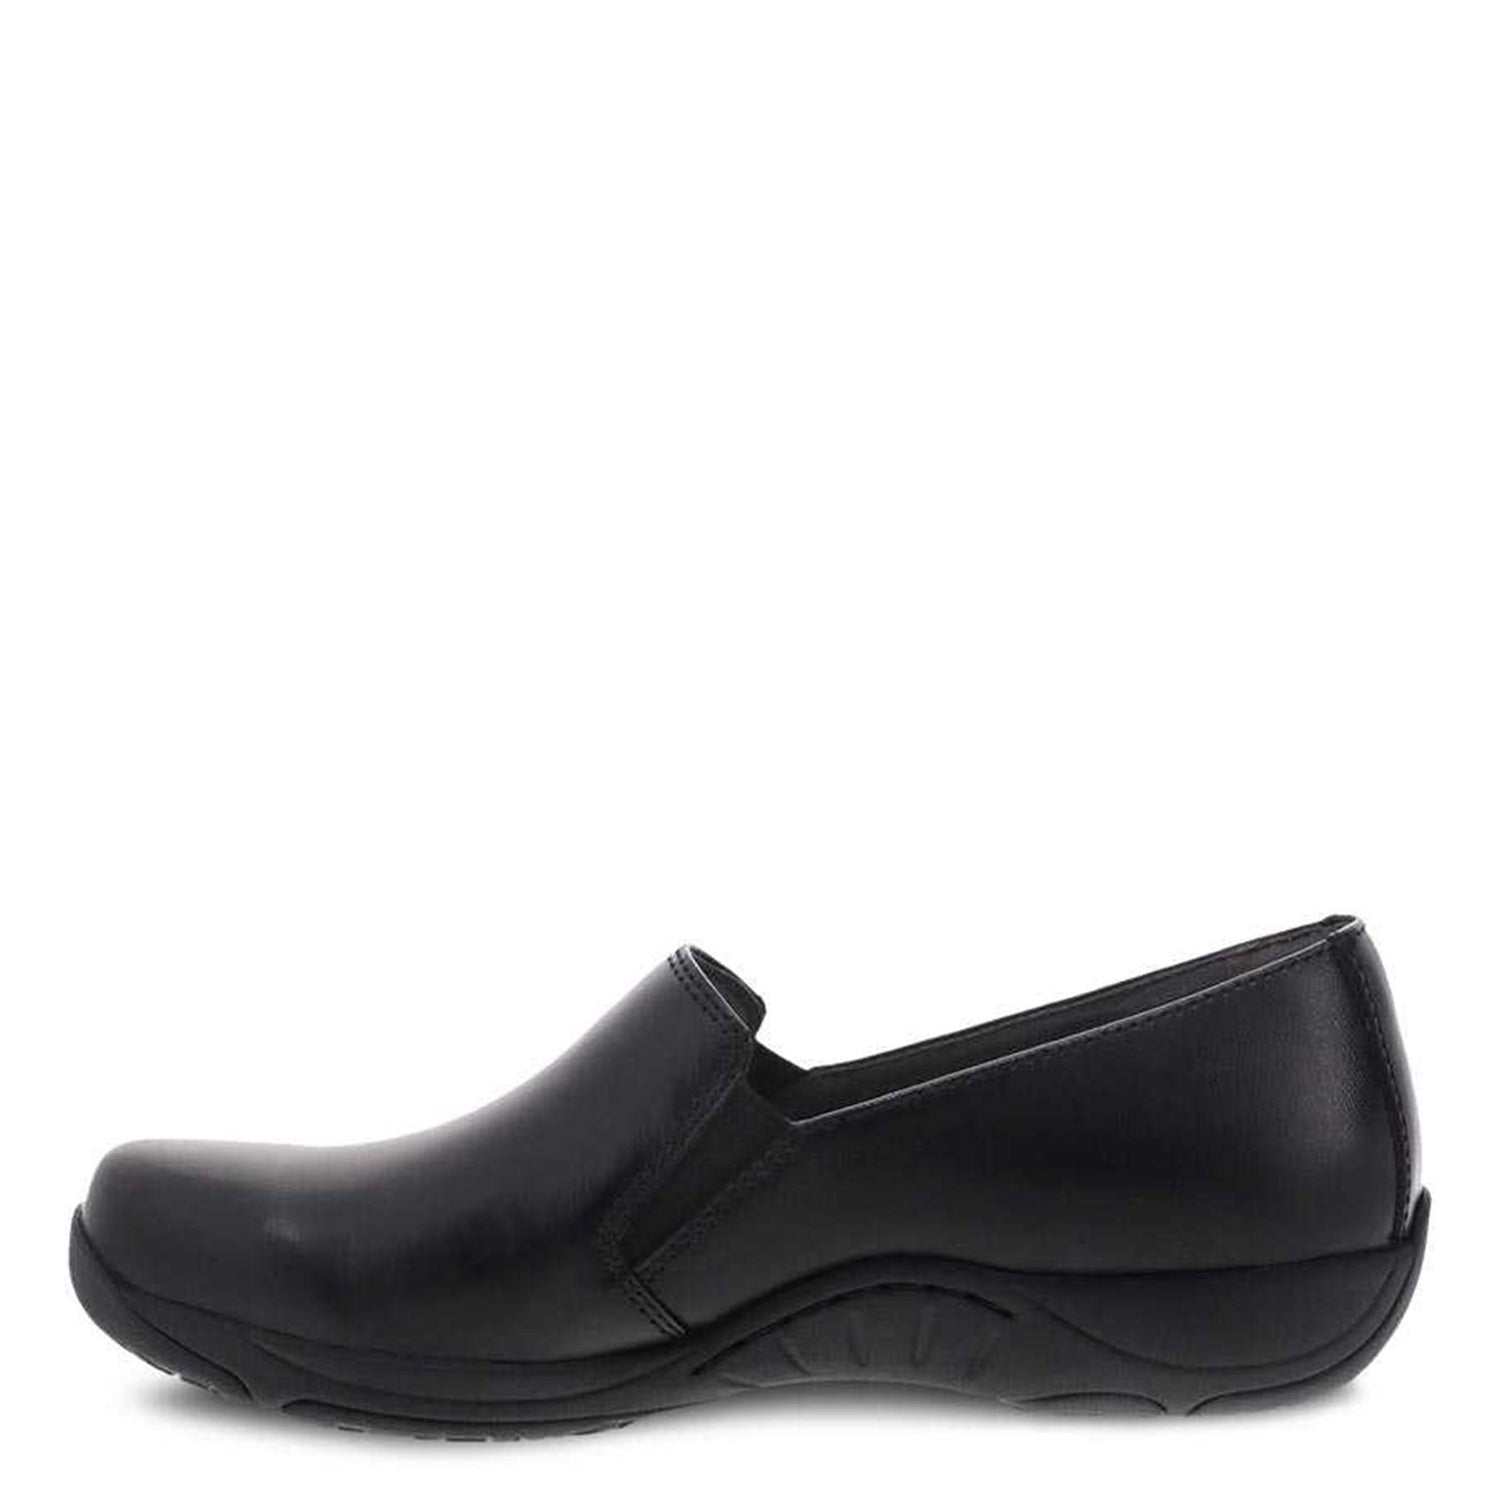 Peltz Shoes  Women's Dansko Nora Clog Black 1956-020202